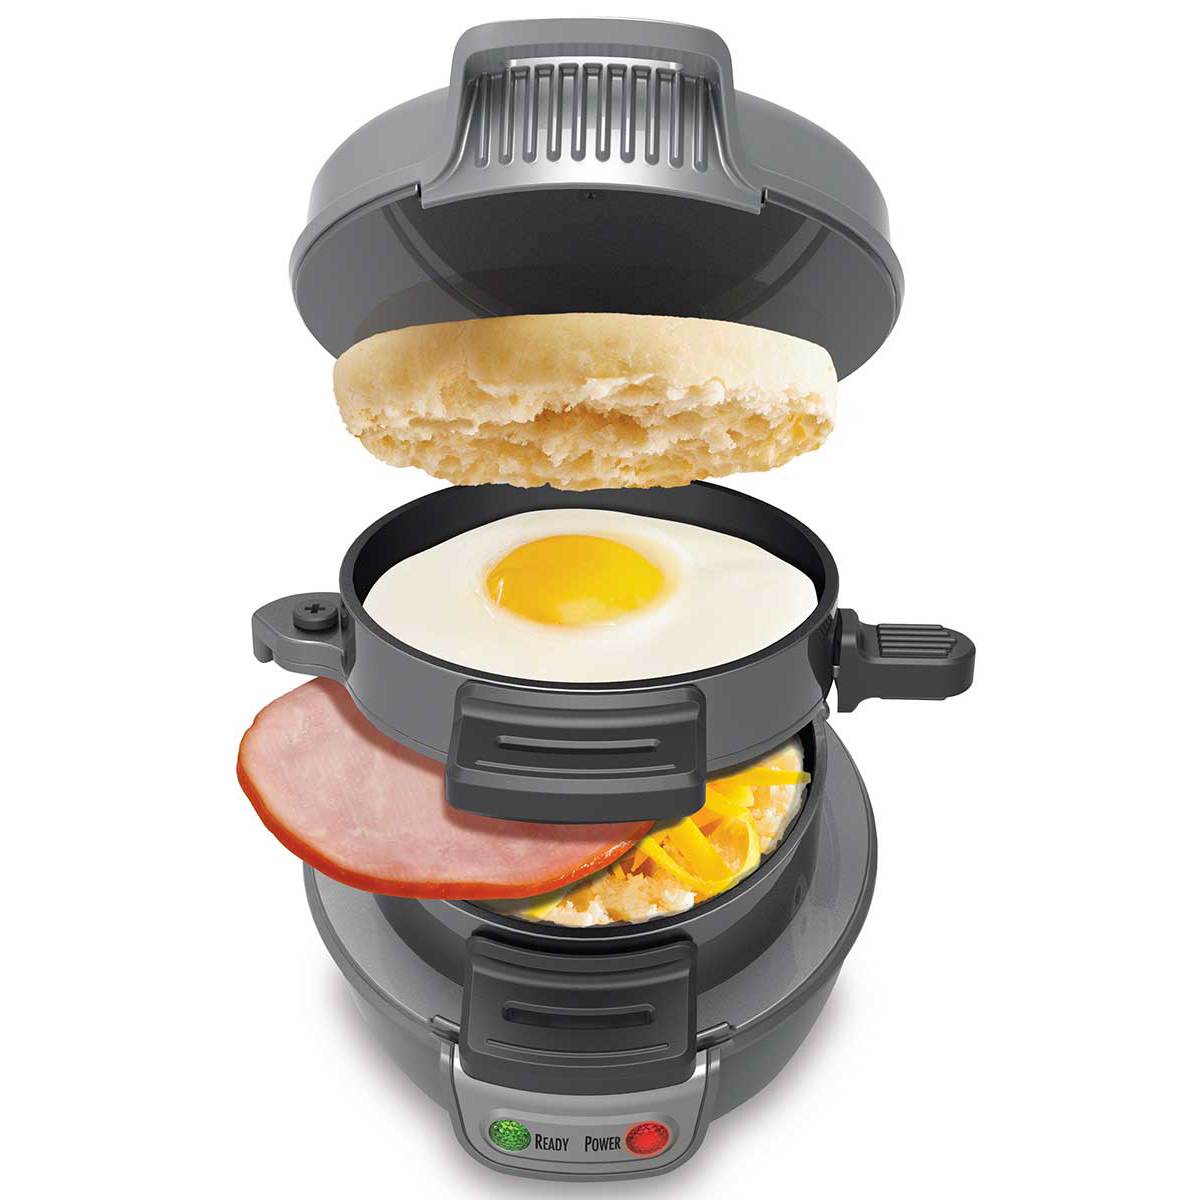 breakfast sandwich maker in gray